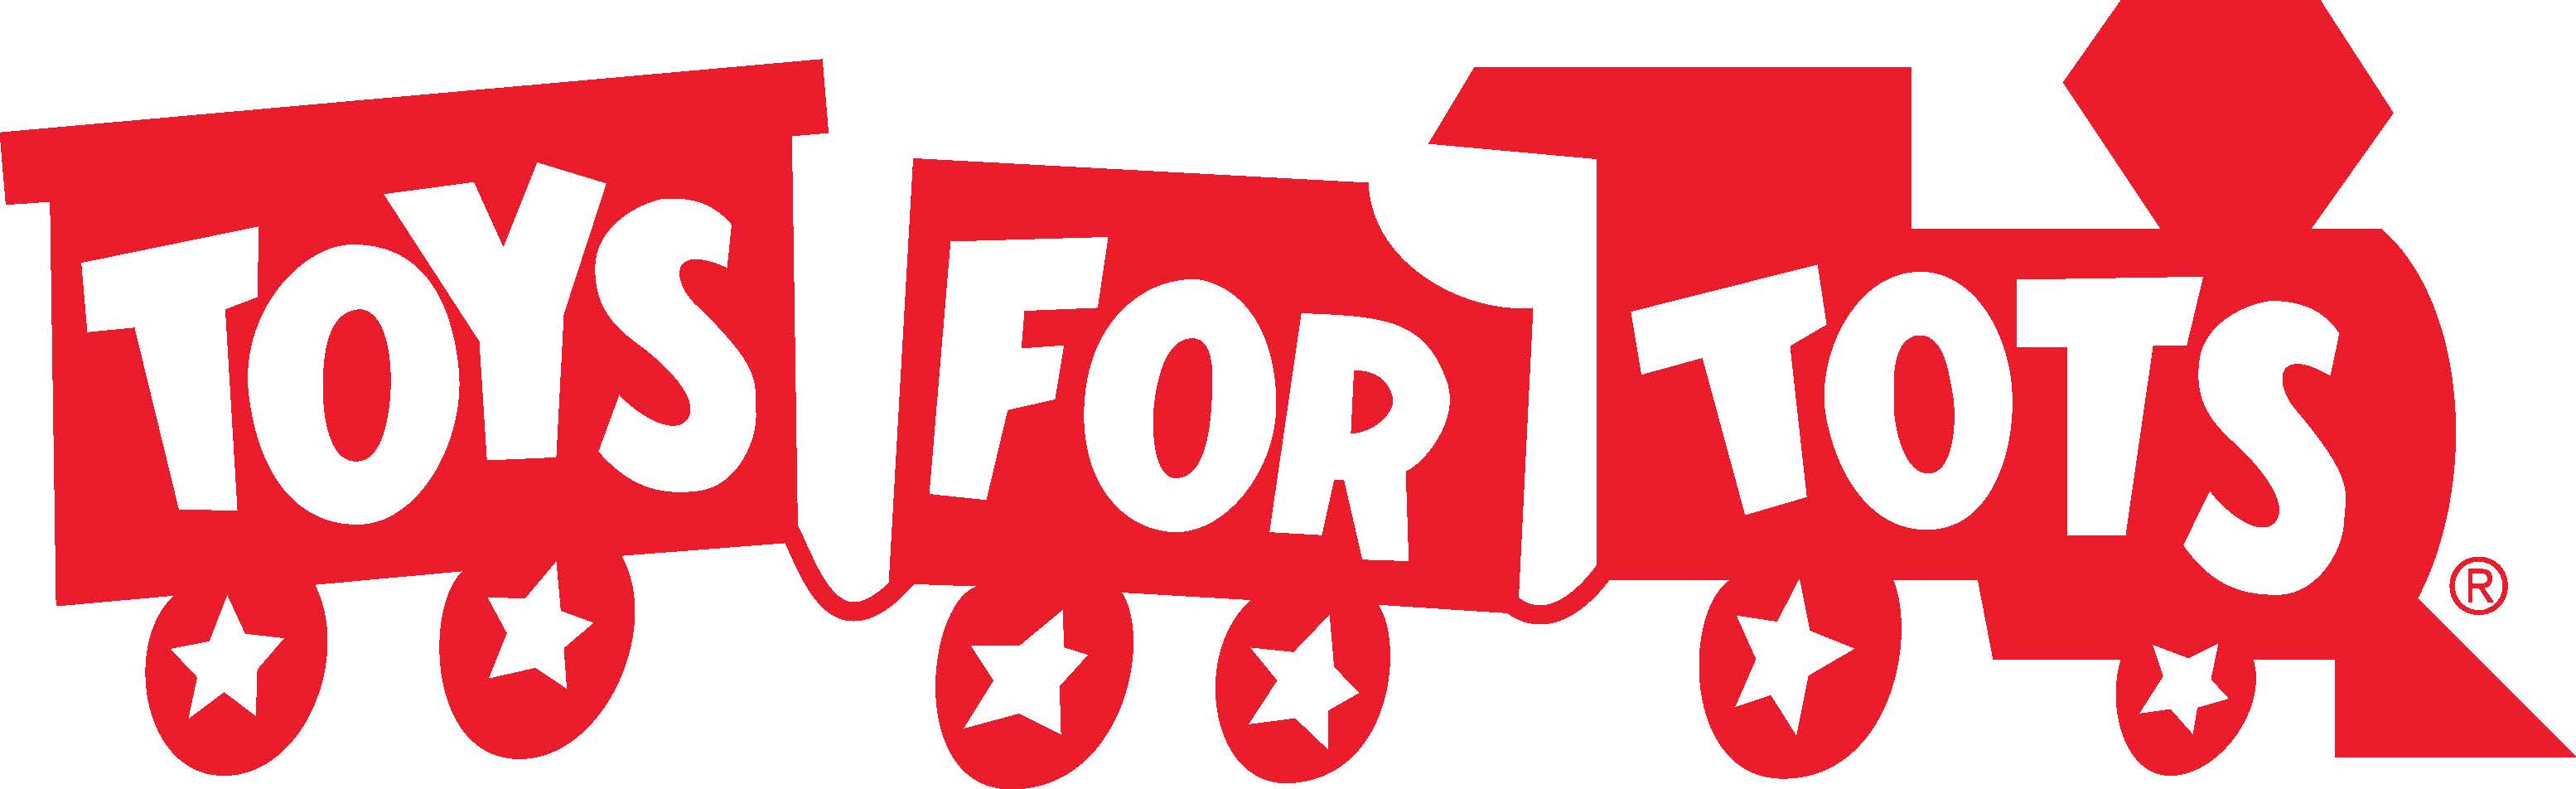 TFTofficial-logo